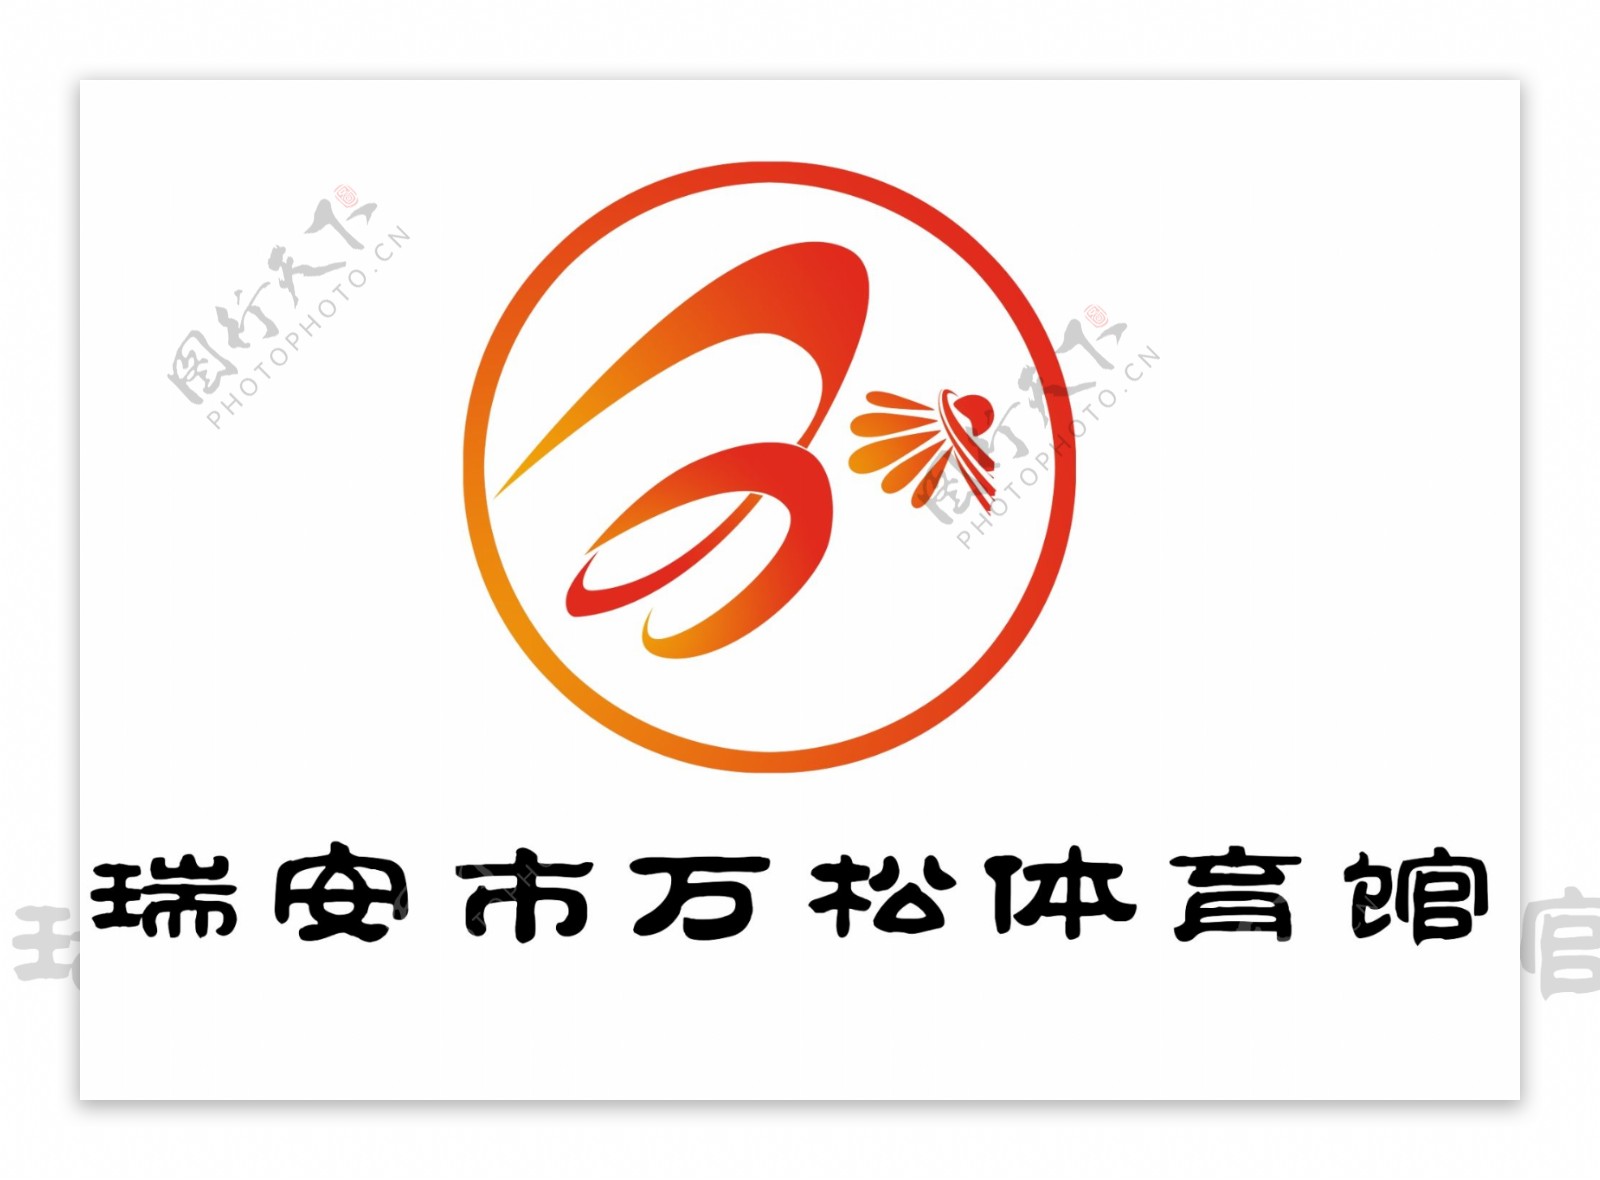 万松体育馆logo